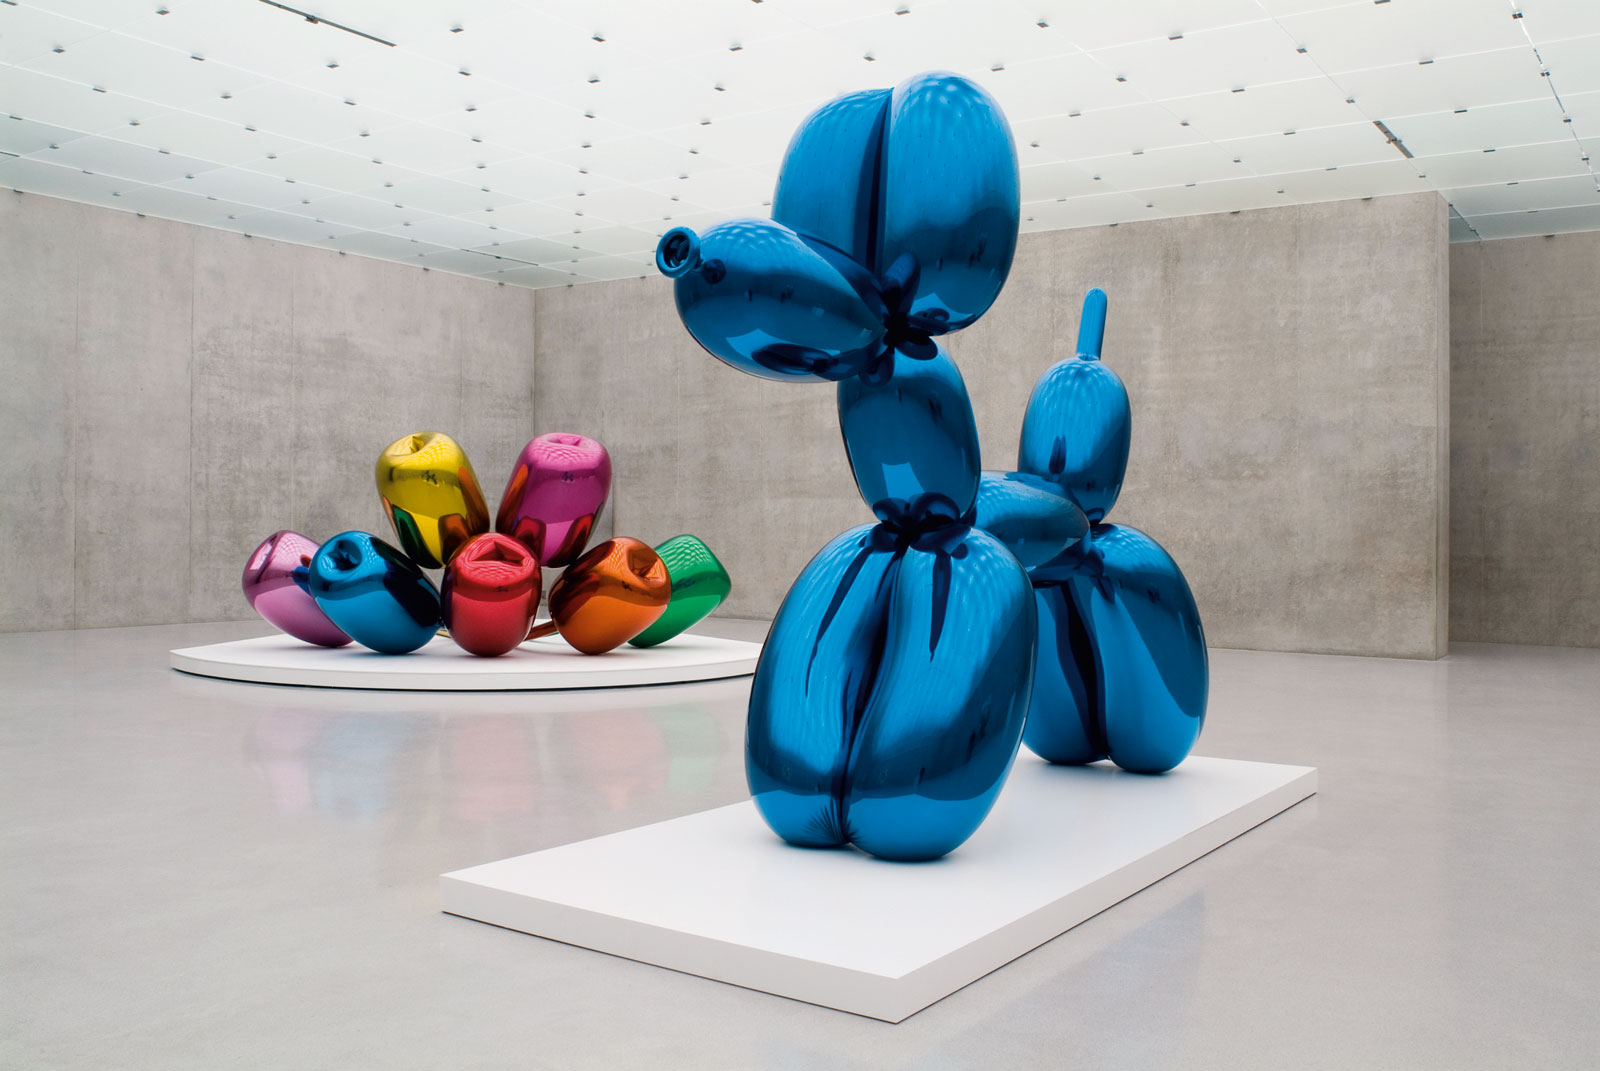 ¡Hola, 2019! Habrá exposición conjunta de Duchamp y Koons en México